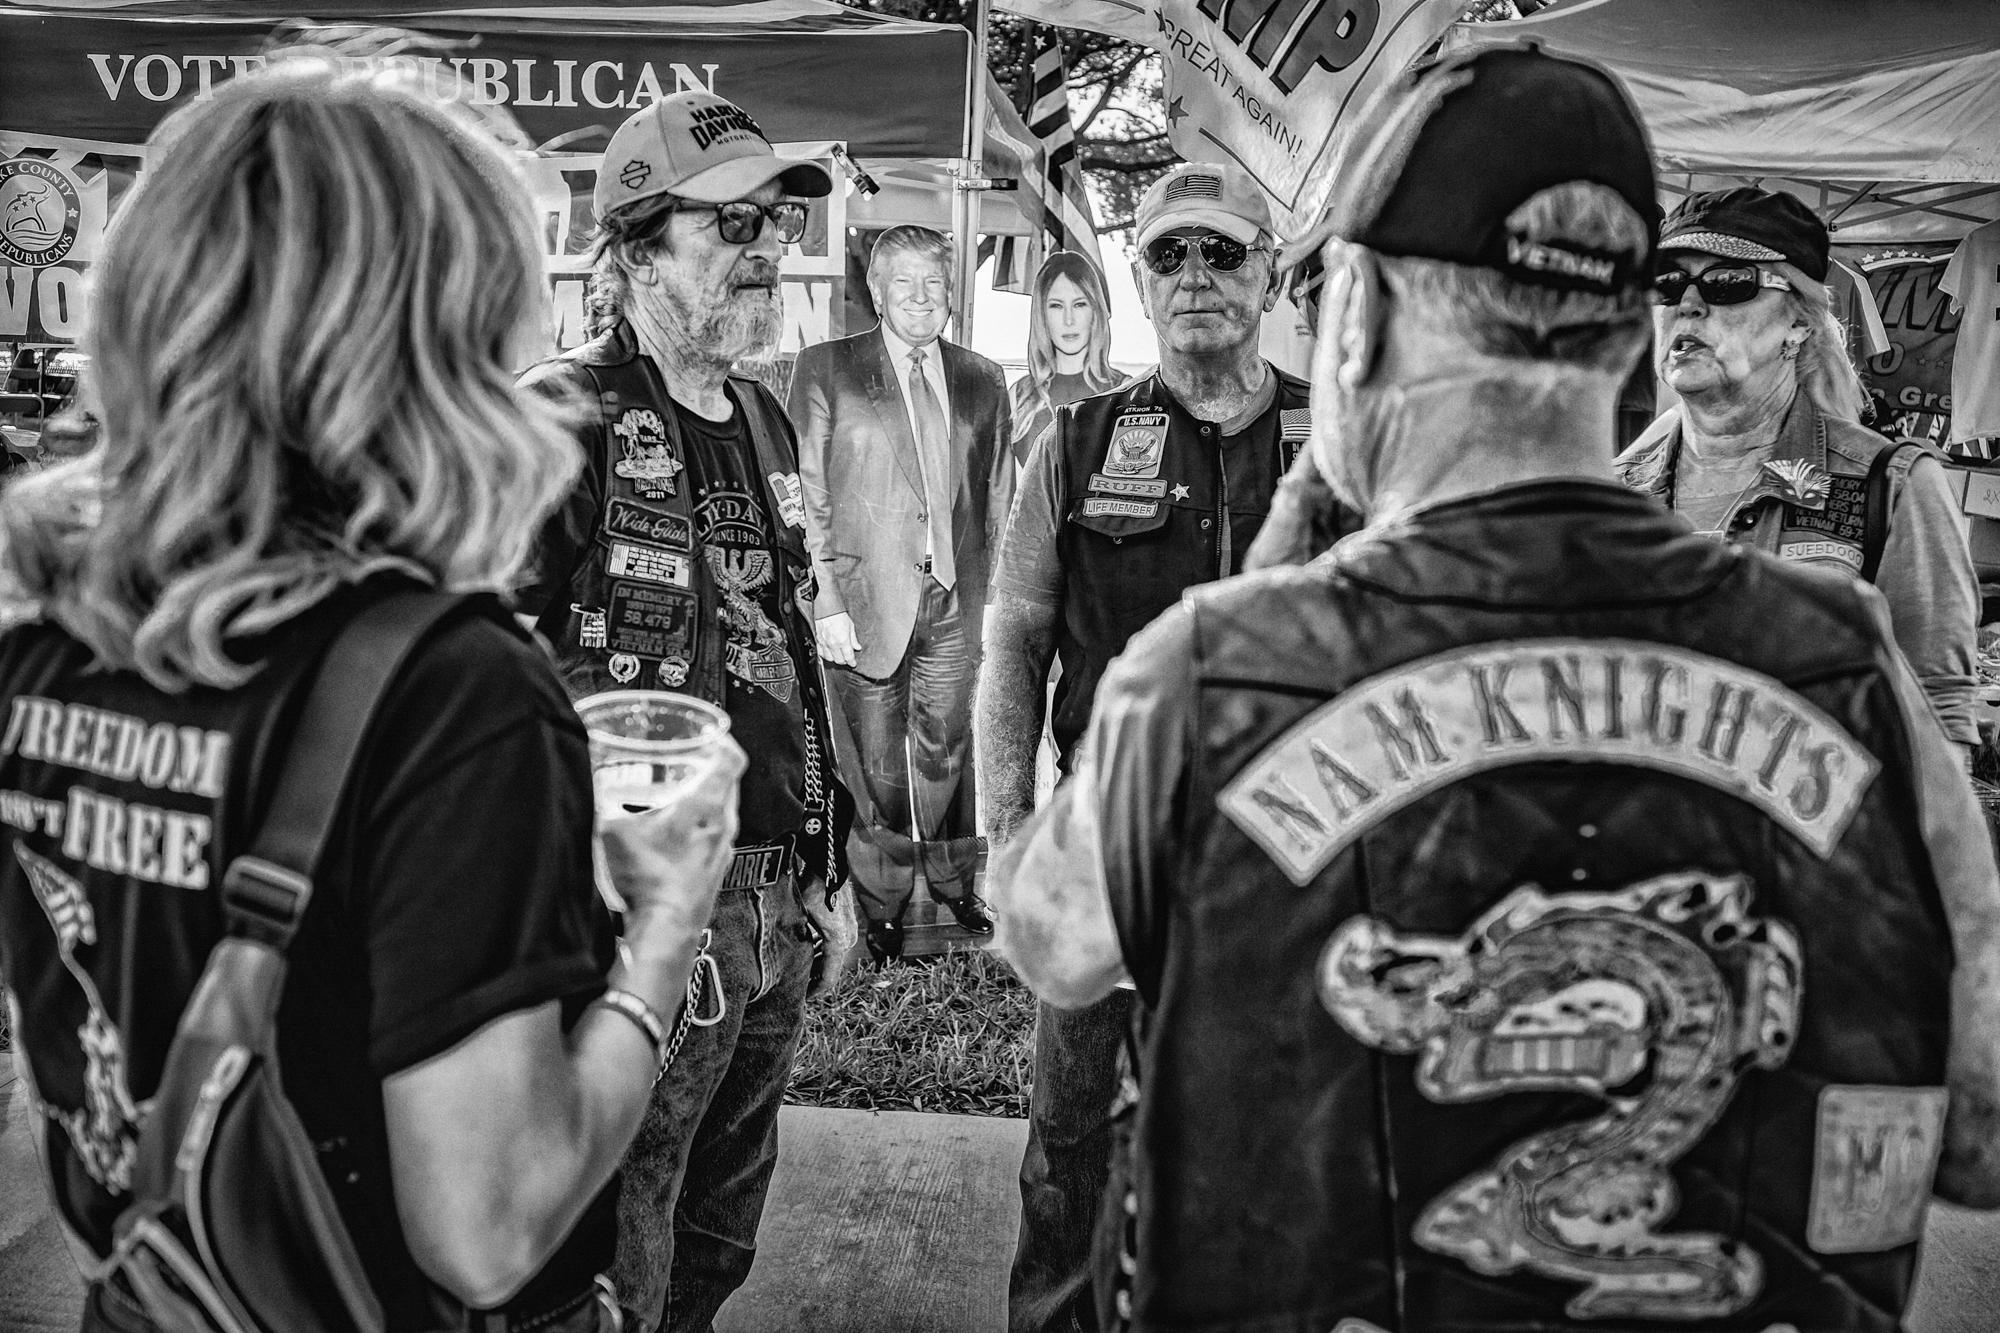 The American Biker - Veterans with Don & Melania, Eustis, FL, 2020